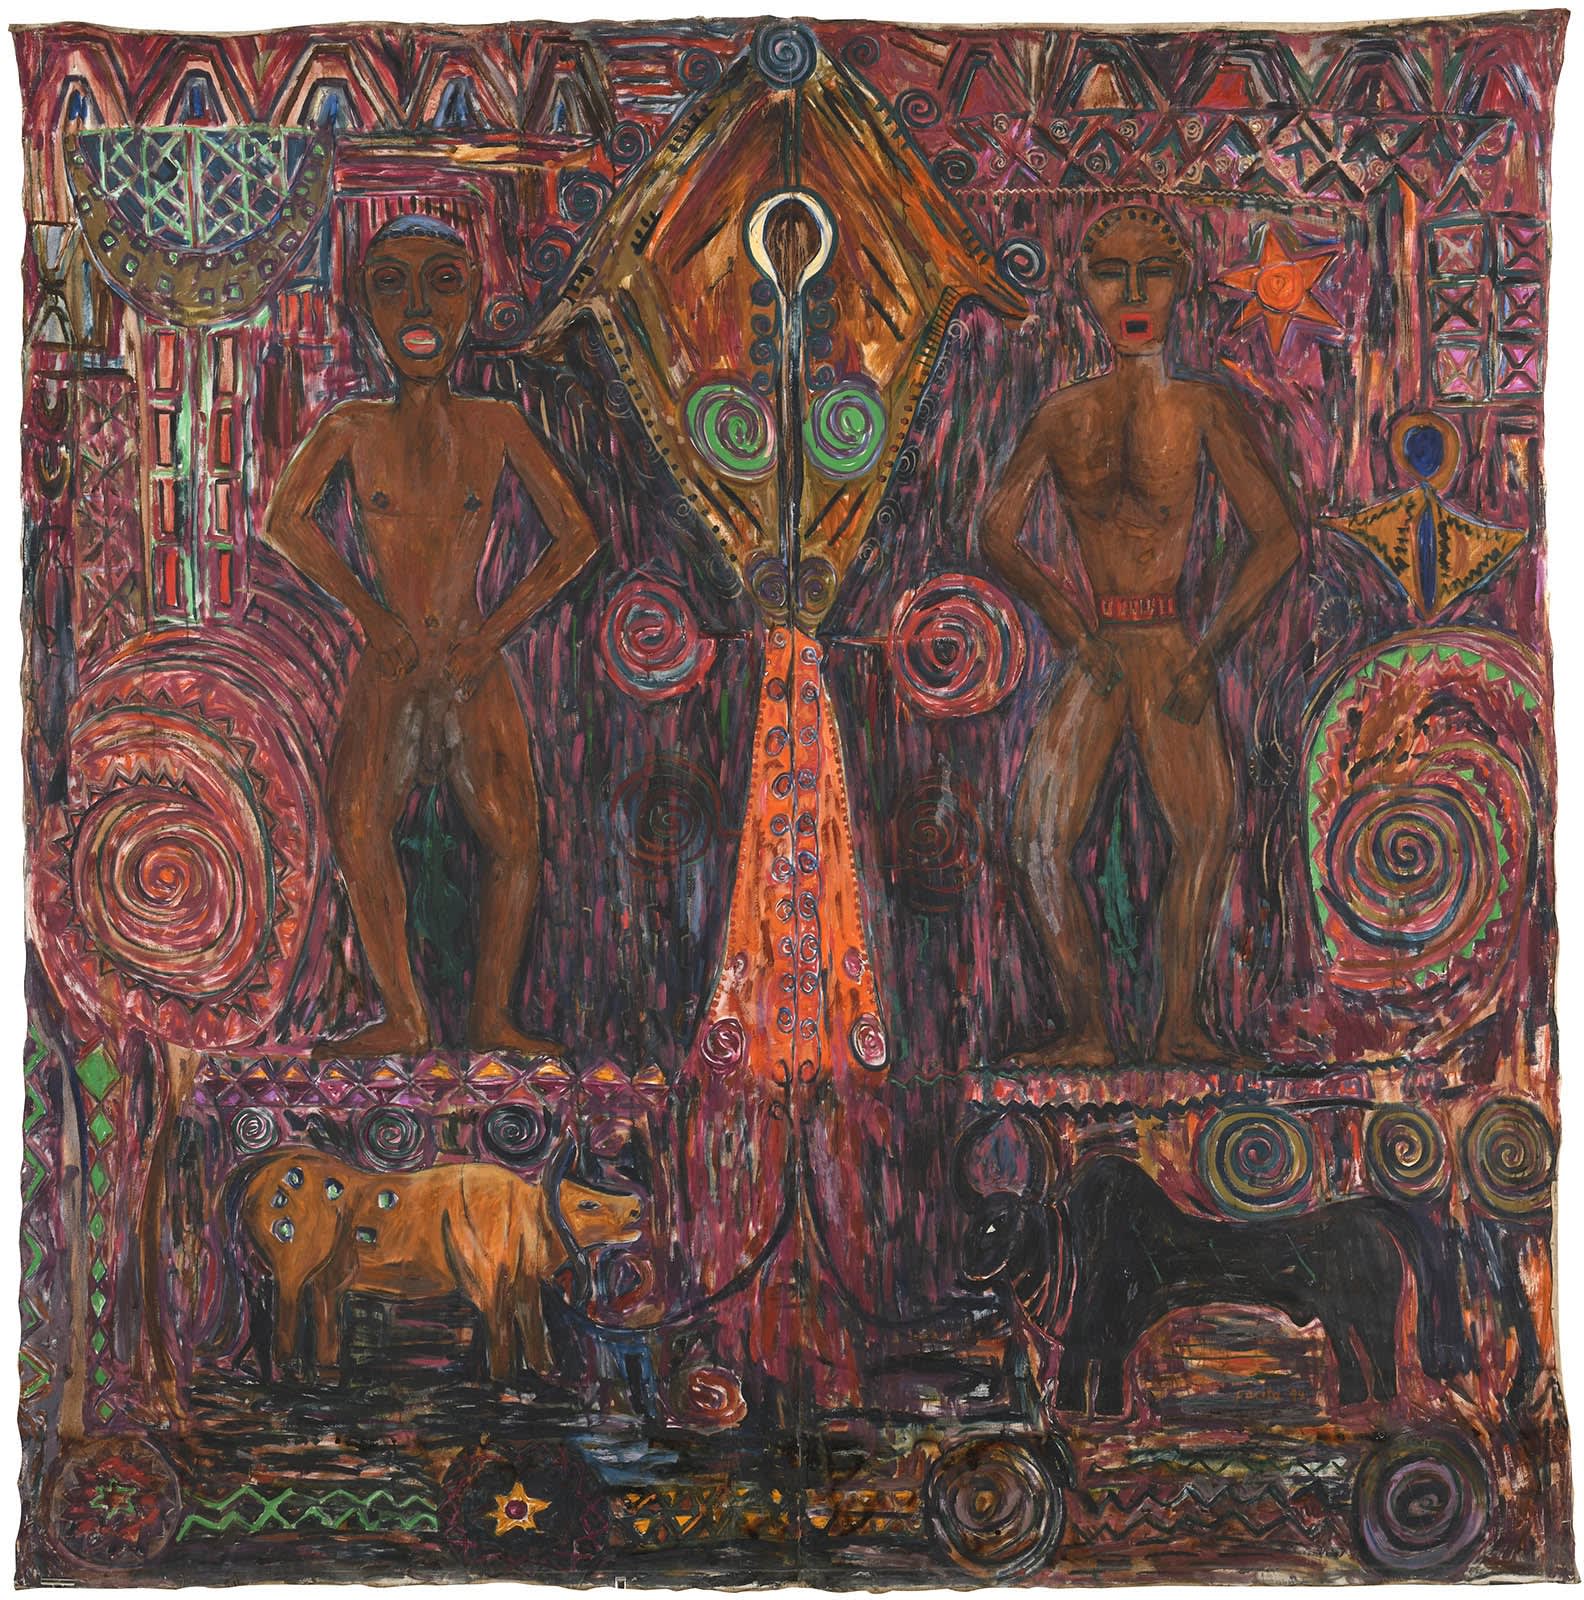 Waikabubak, 1994 Oil on canvas 117 x 115 in 296 x 293 cm